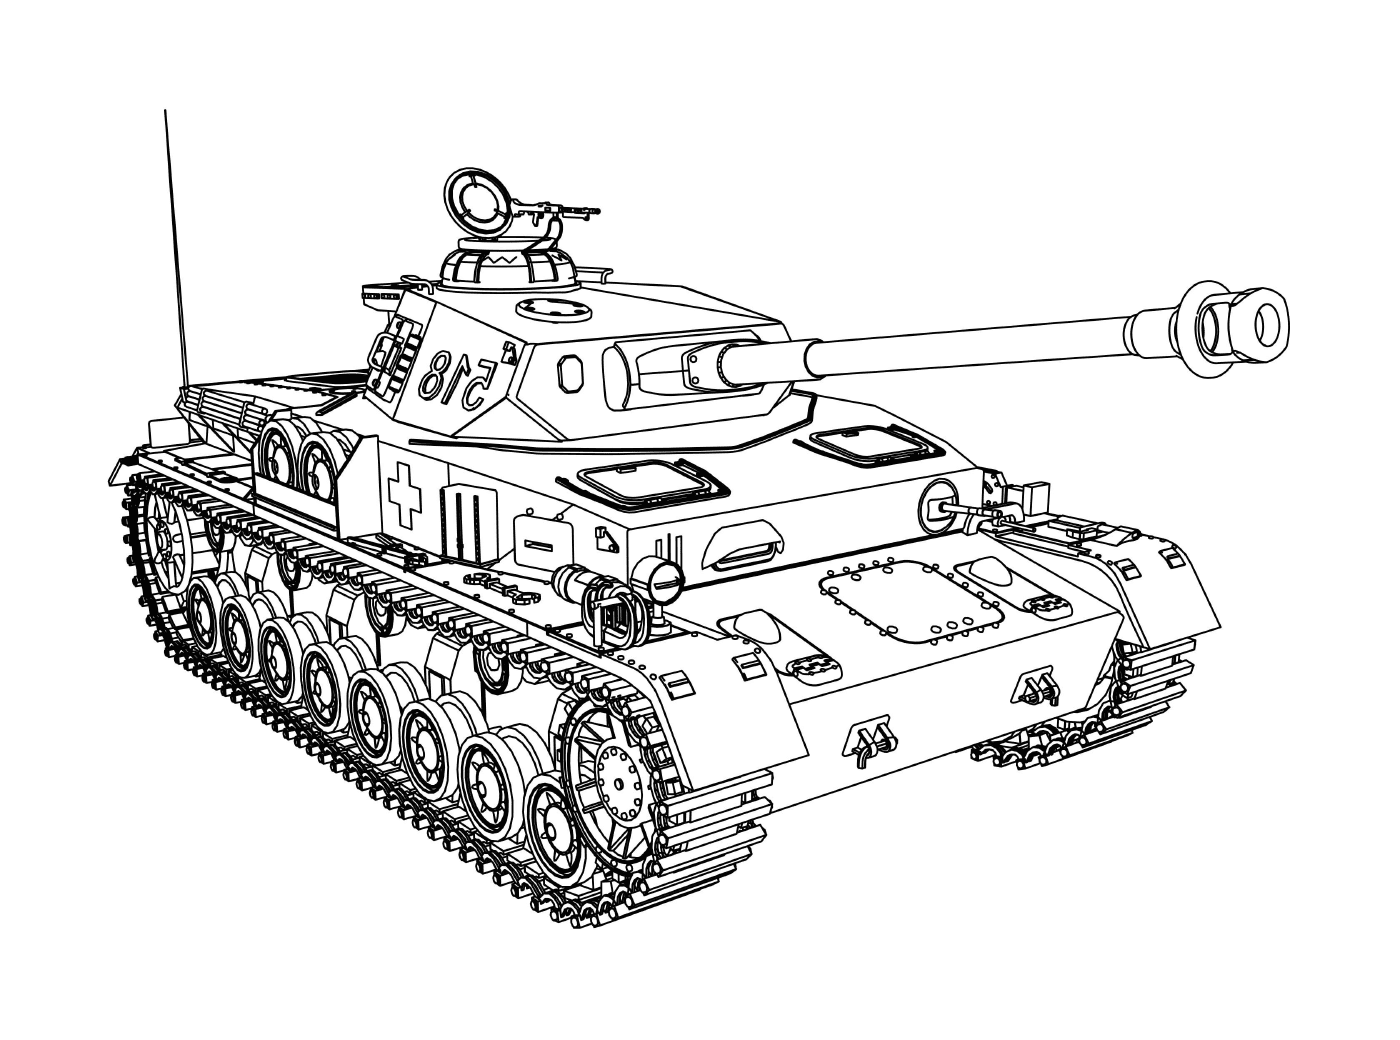  Panzer Militärfahrzeug: ein alter militärischer Panzer 